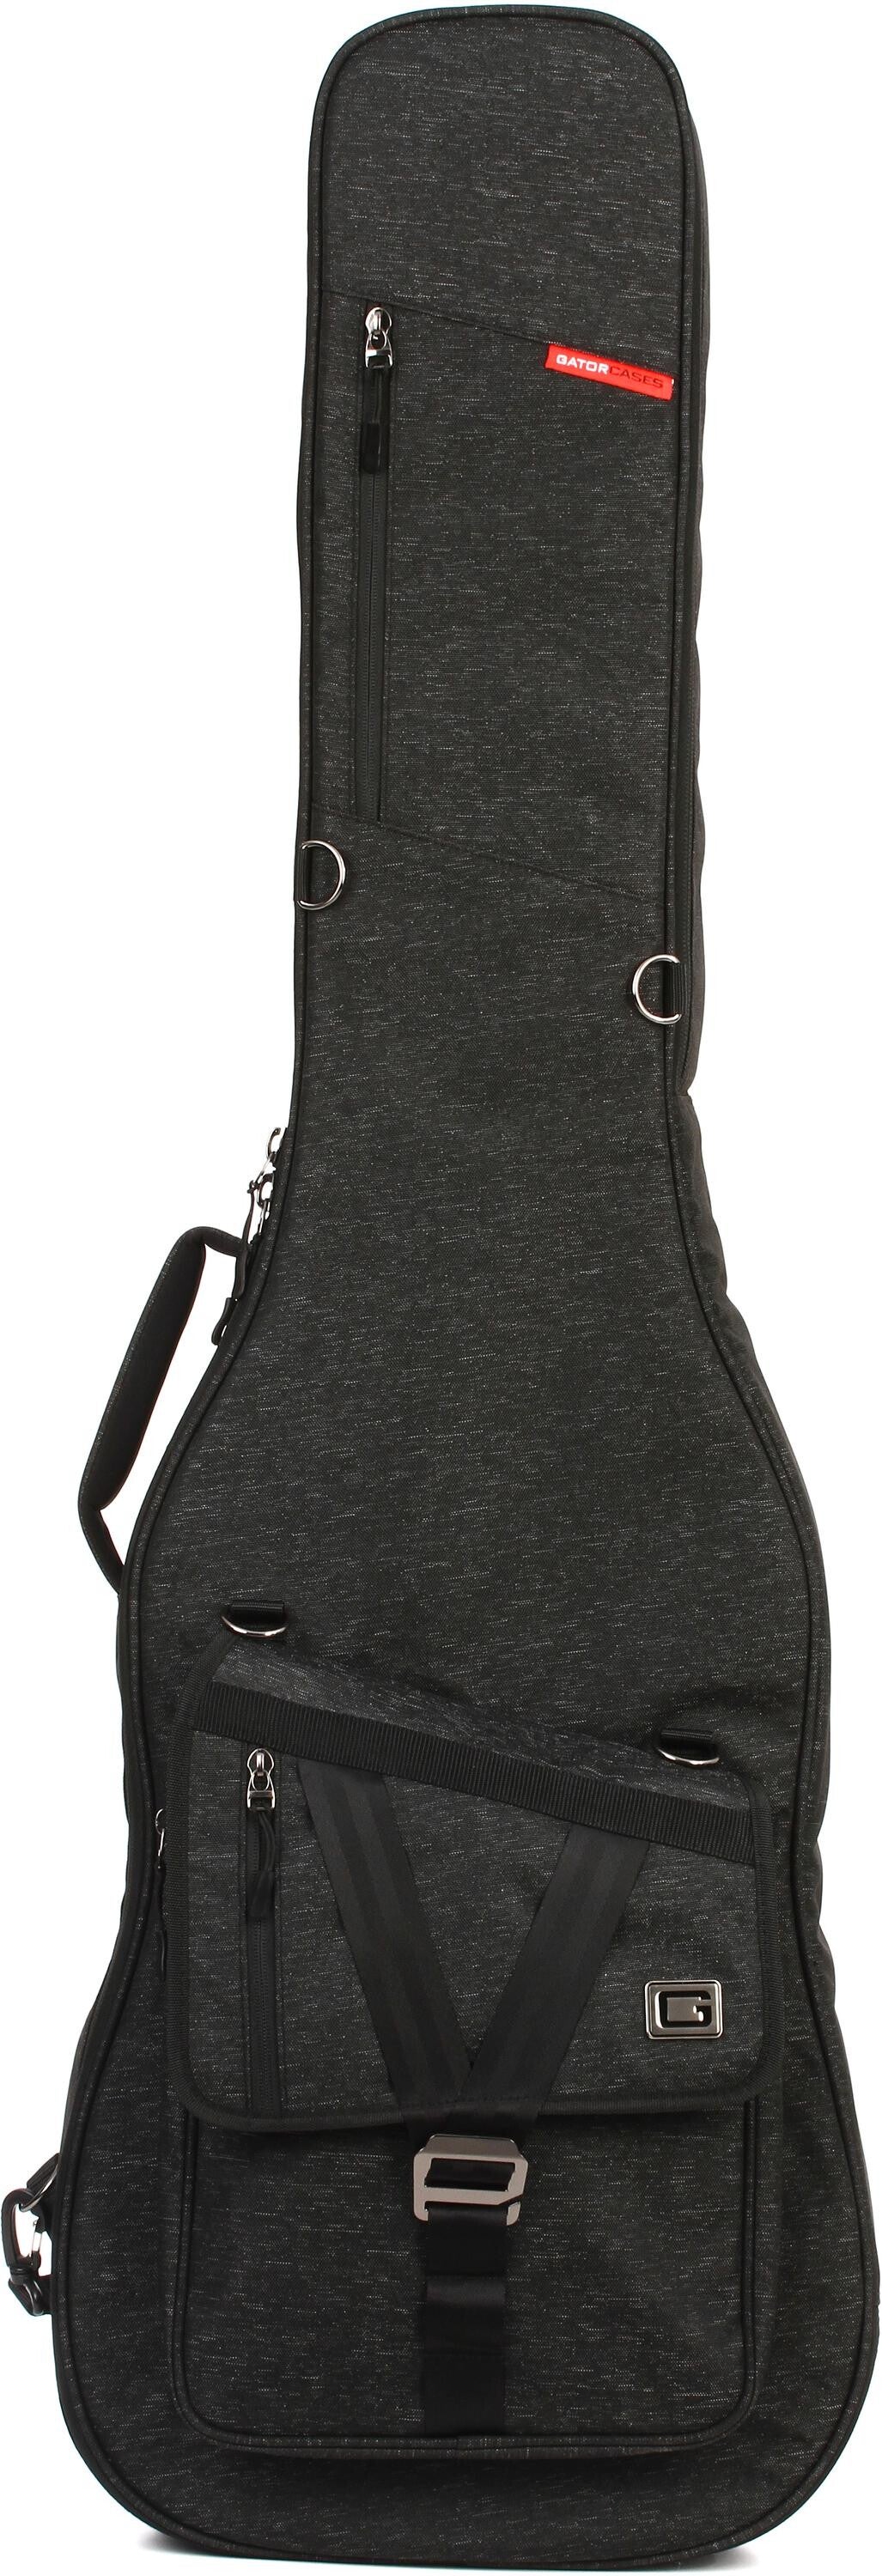 Gator Transit Bass Guitar Bag - Charcoal Black | Sweetwater